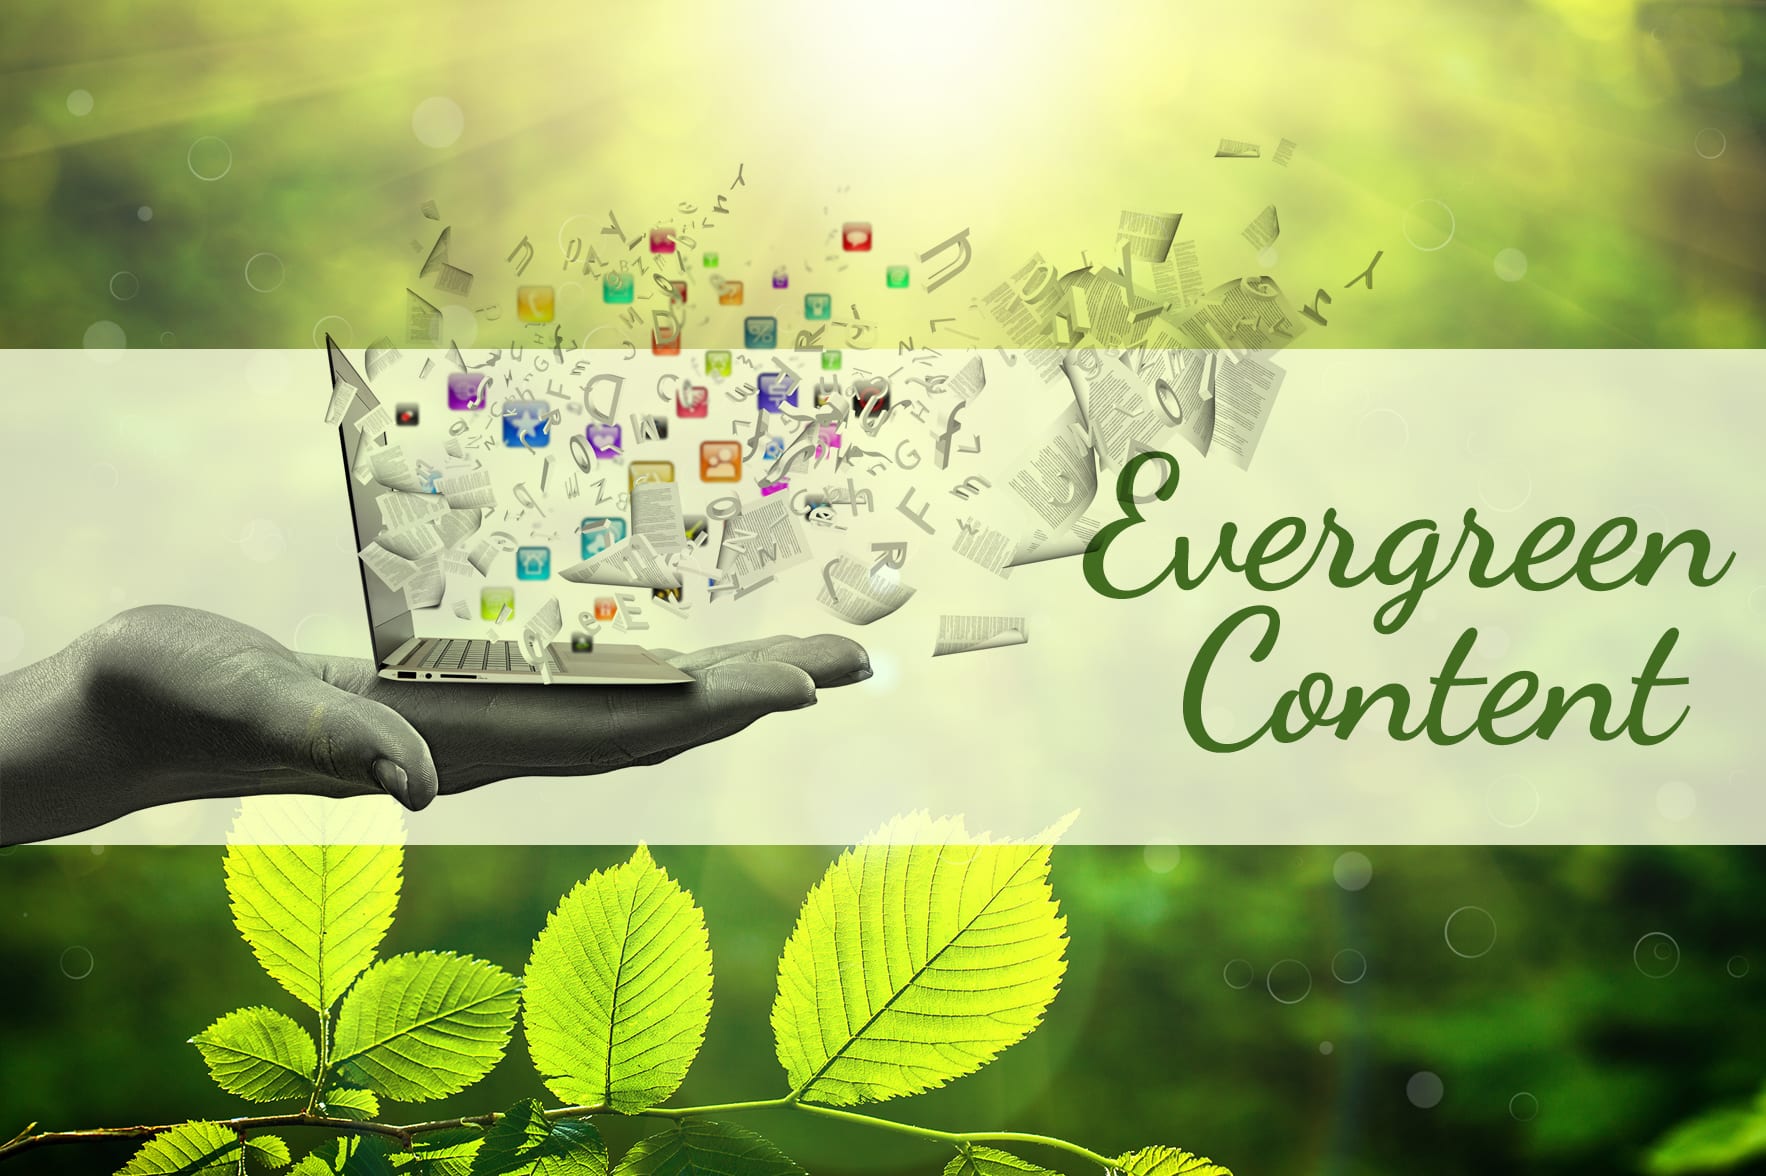 Evergreen content là gì? Mẹo tối ưu Evergreen conten hiệu quả nhất cho website